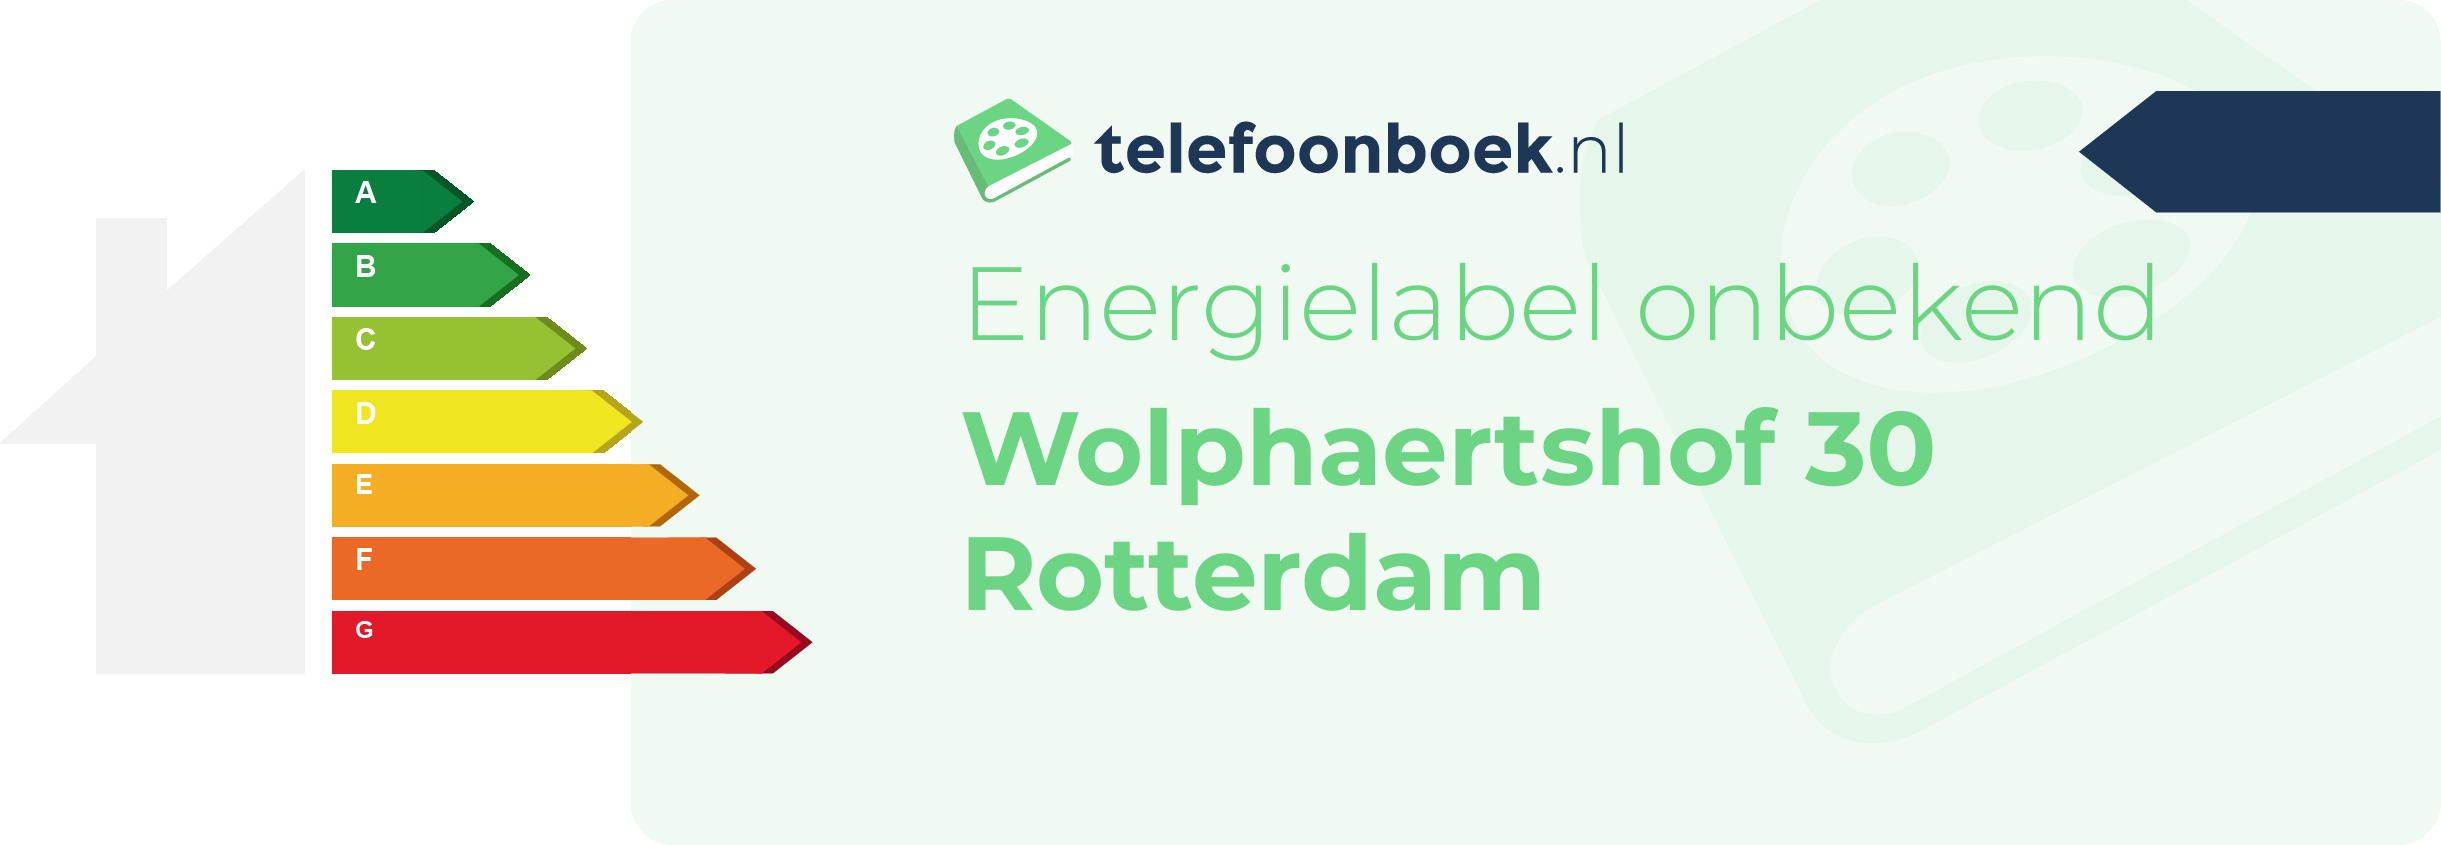 Energielabel Wolphaertshof 30 Rotterdam